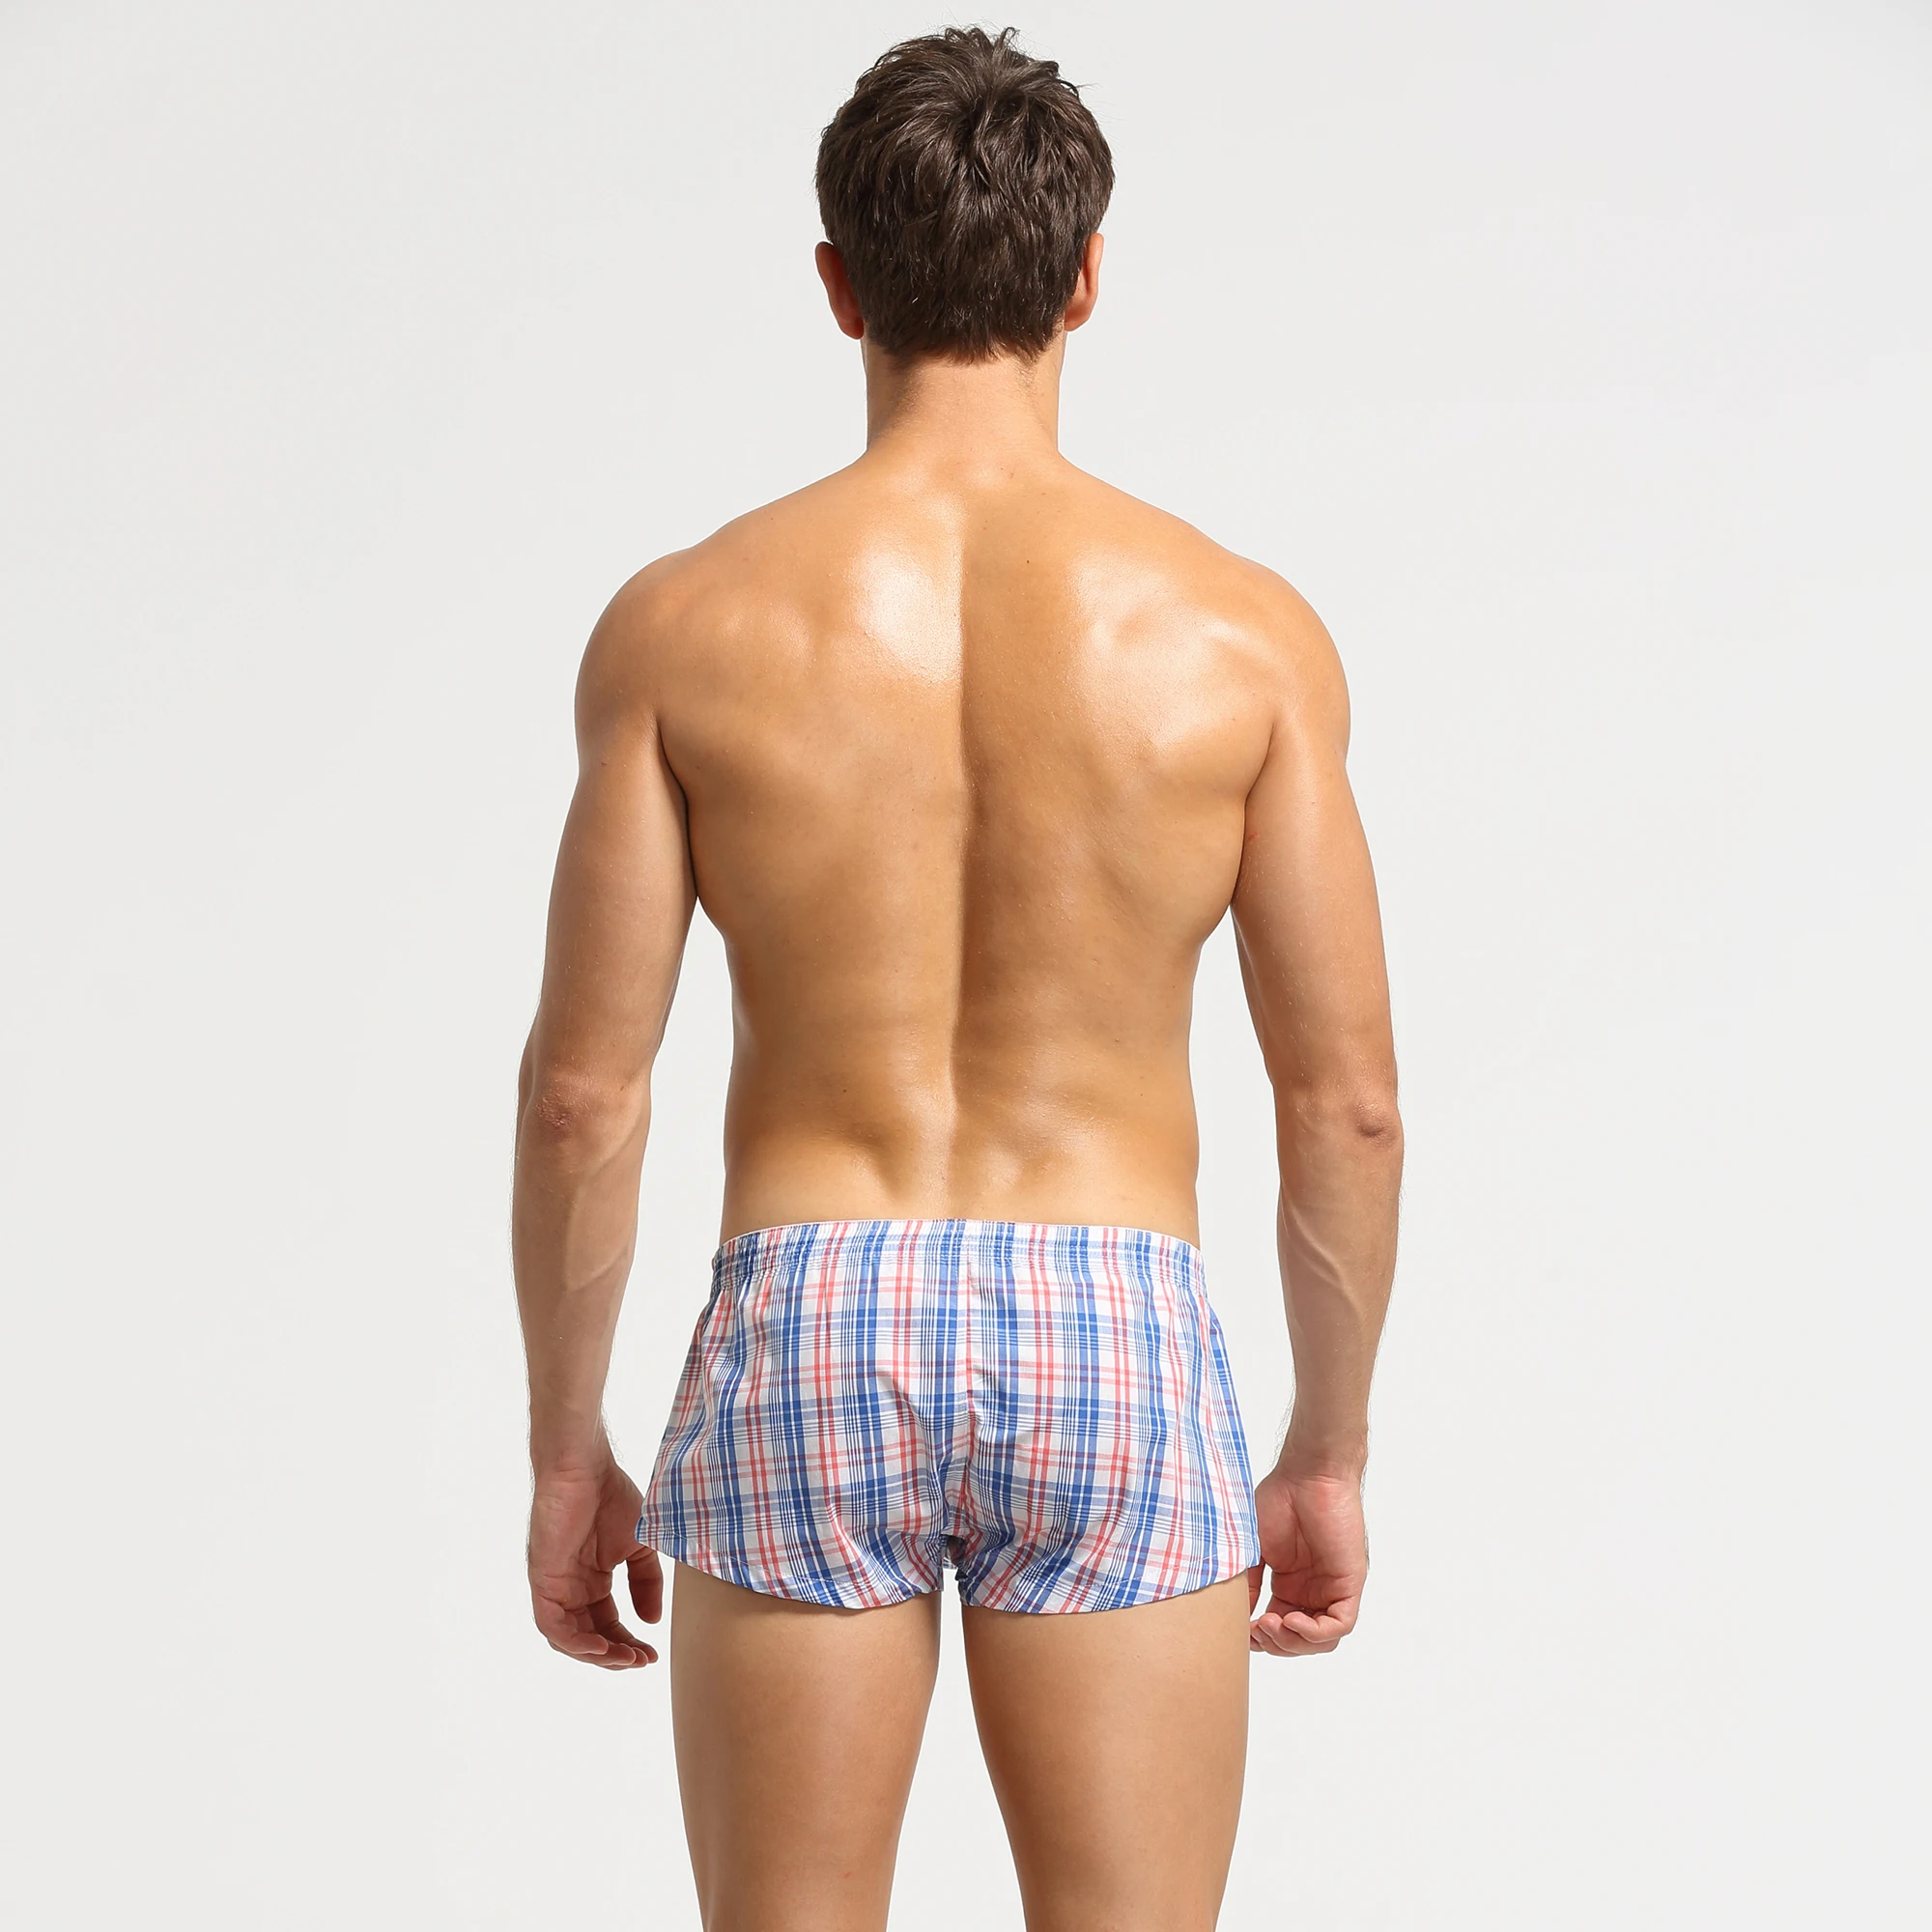 Novo SEOBEAN Algodão curto cortos homens de Mens shorts de pijama Treino de Xadrez U saco Casual Troncos Shorts do Pijama Imagem 2